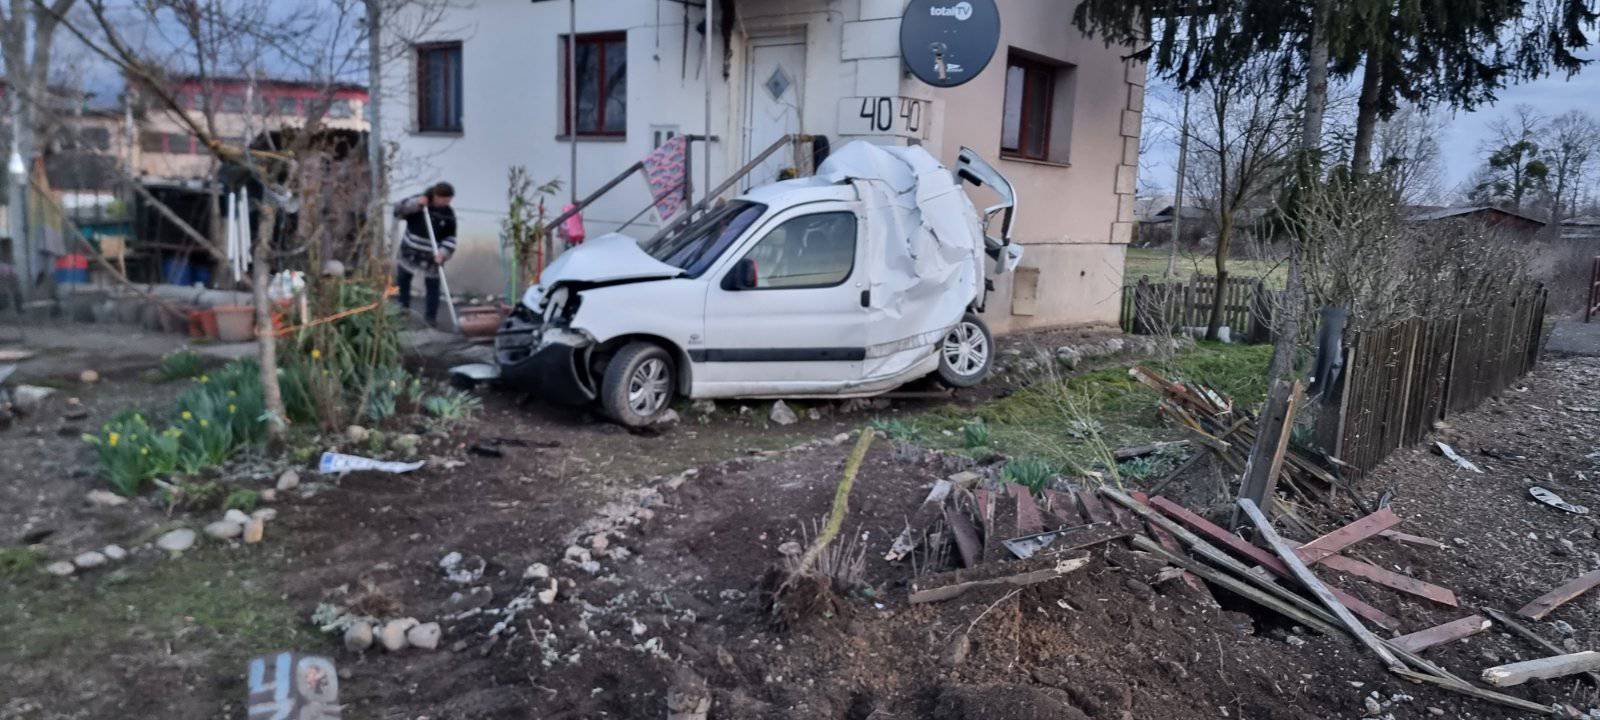 FOTO Vozač u Čakovcu zaobišao rampu i preživio sudar s vlakom koji ga je odbacio u zid kuće